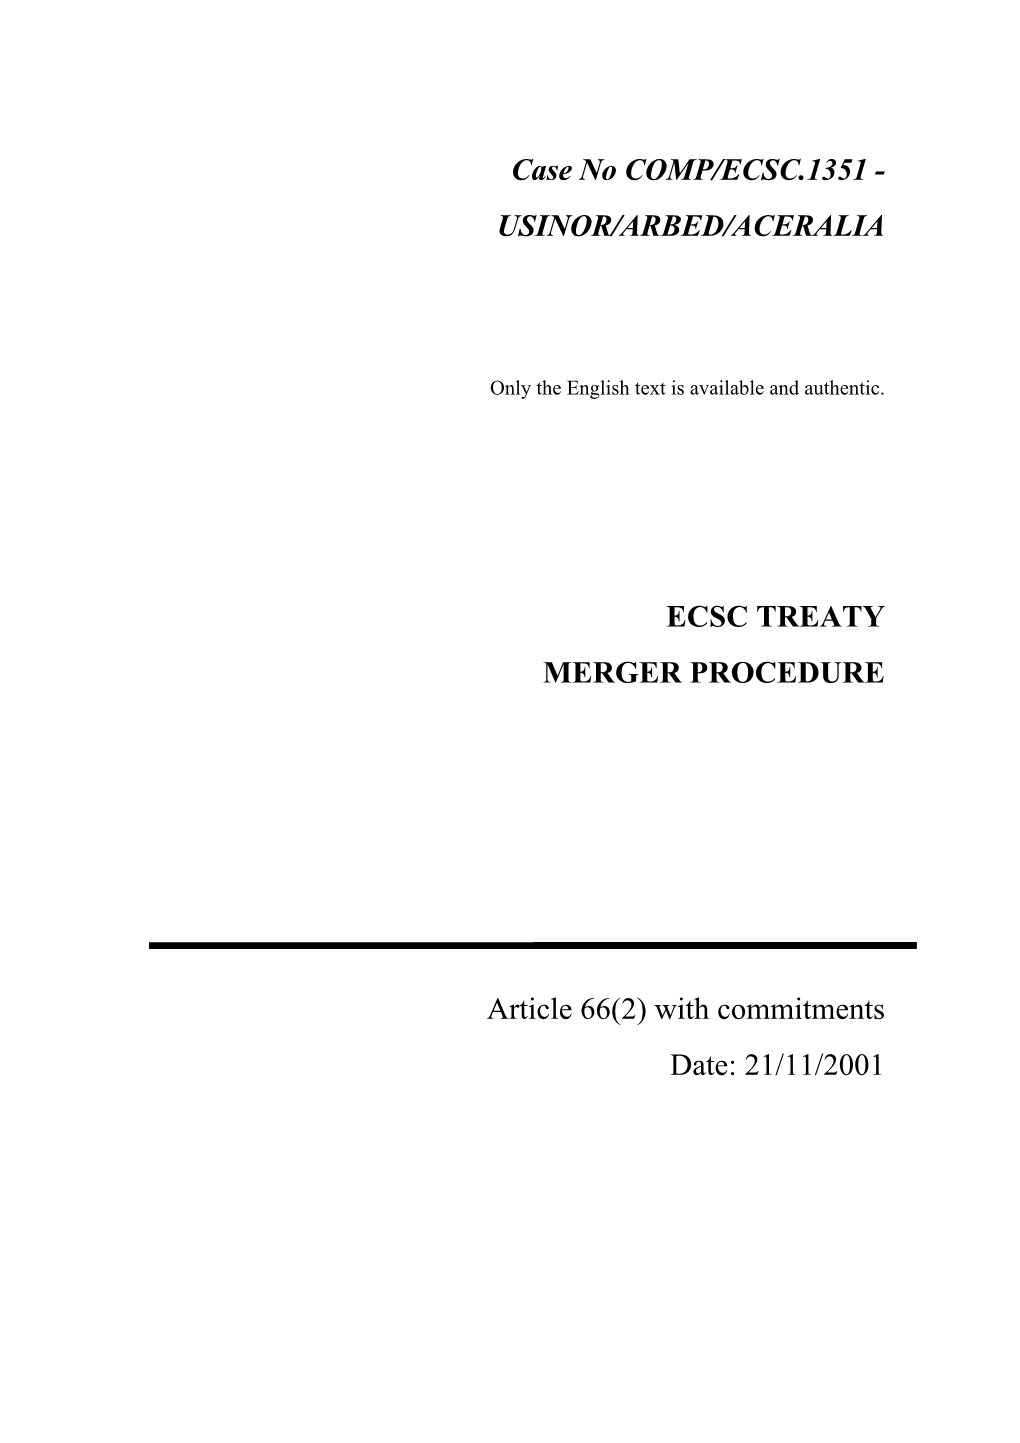 Case No COMP/ECSC.1351 - USINOR/ARBED/ACERALIA